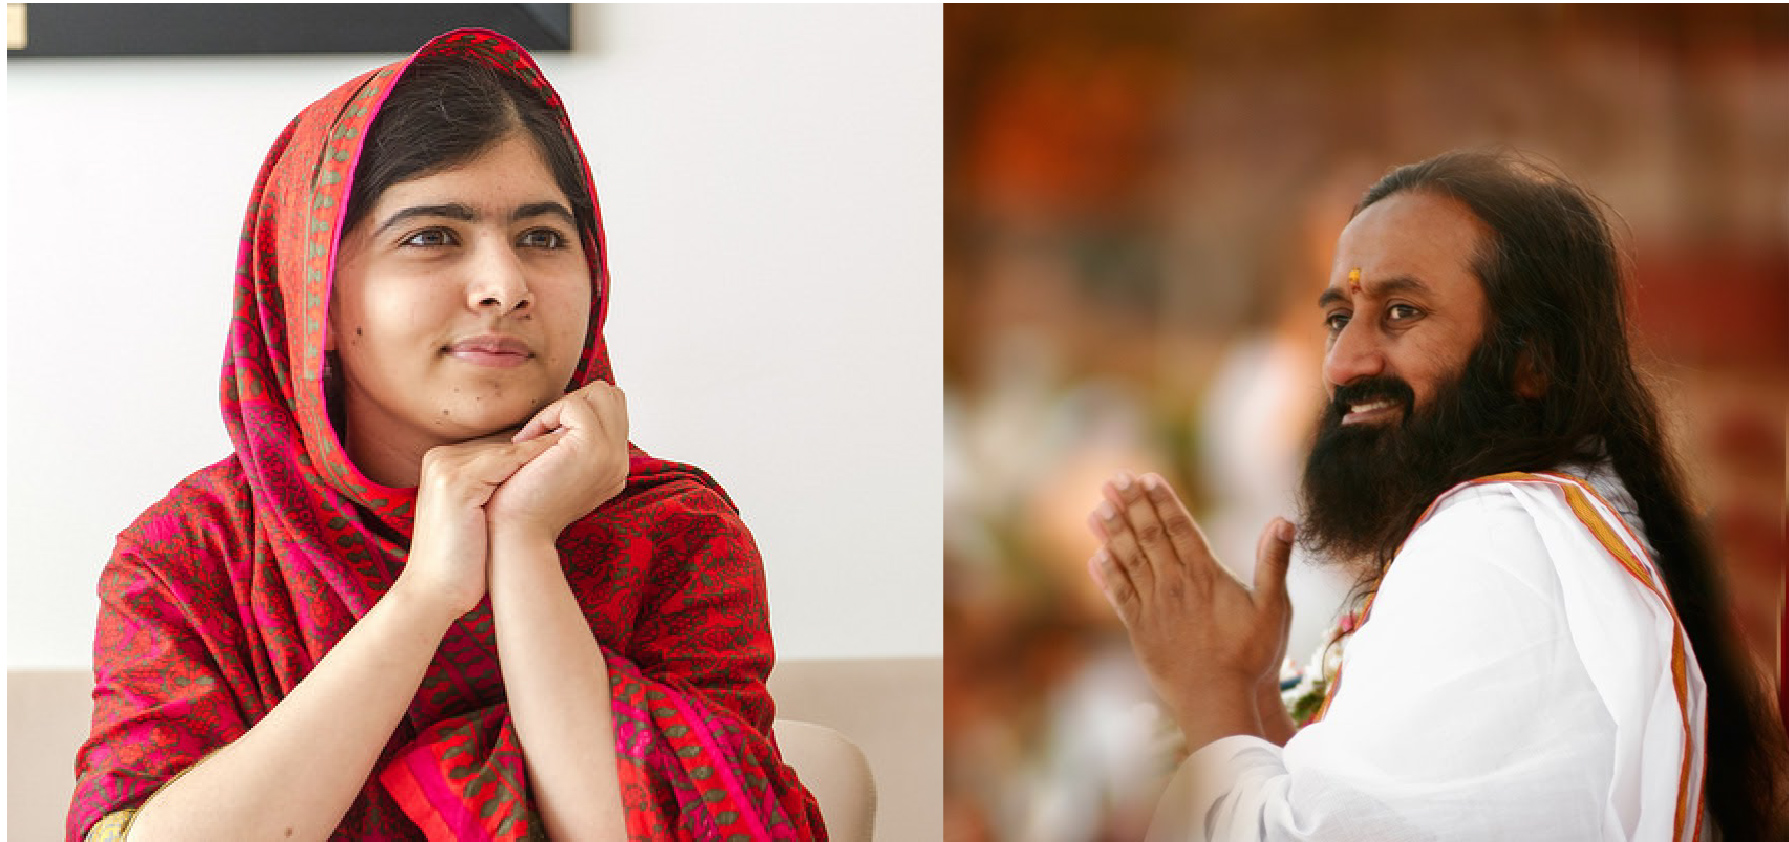 Malala “did nothing” to deserve the Nobel Peace Prize: says Sri Sri Ravi Shankar